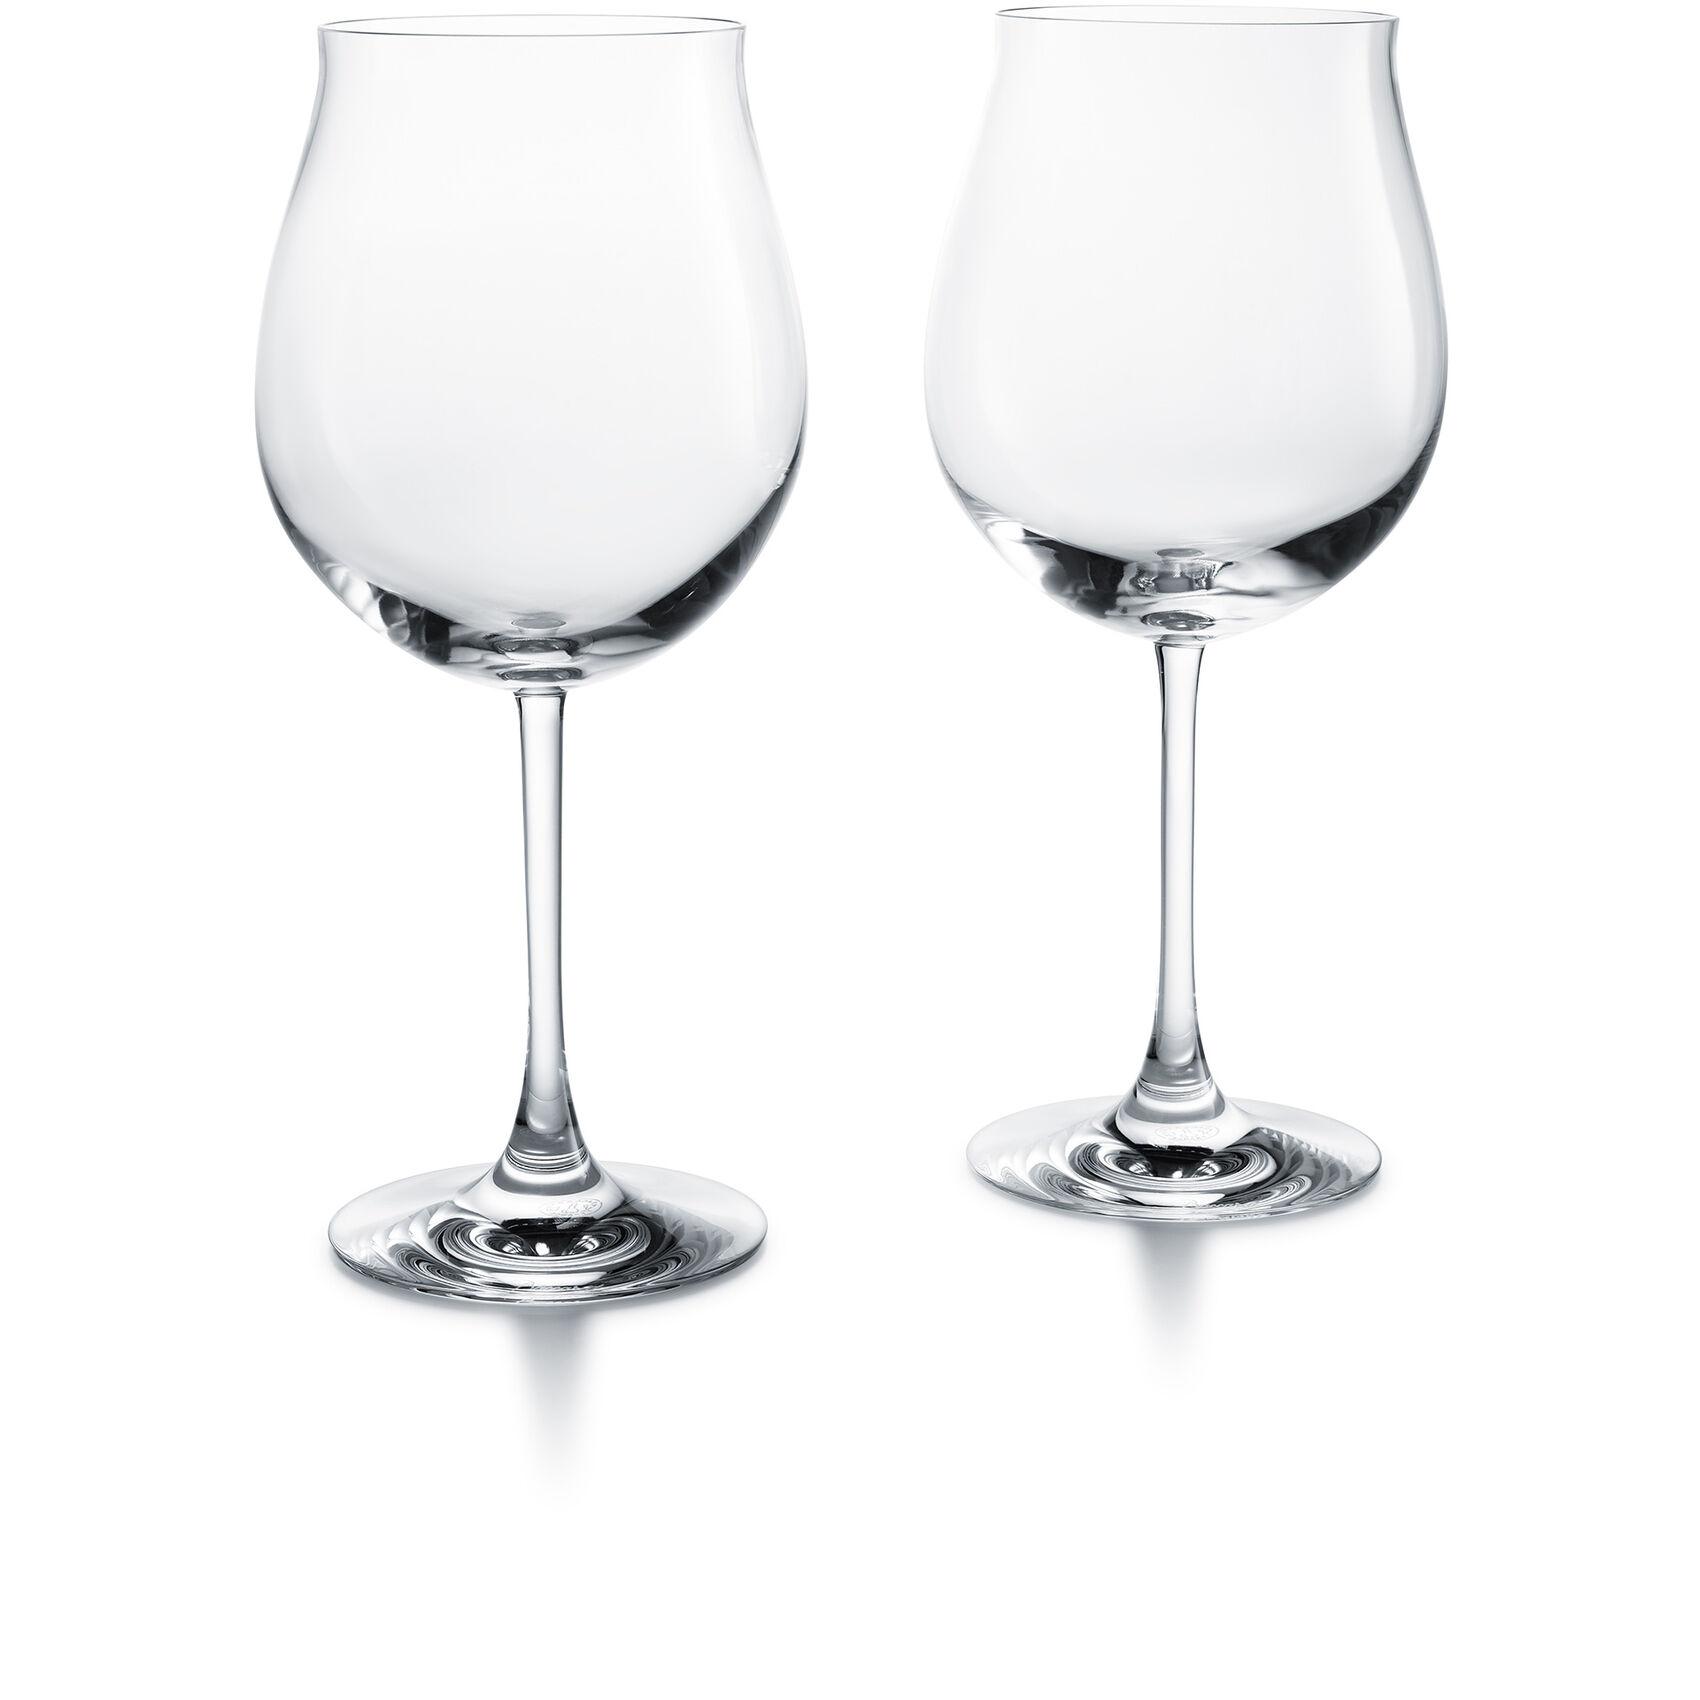 Baccarat Degustation Grand Bourgogne Tasting Glass, pair